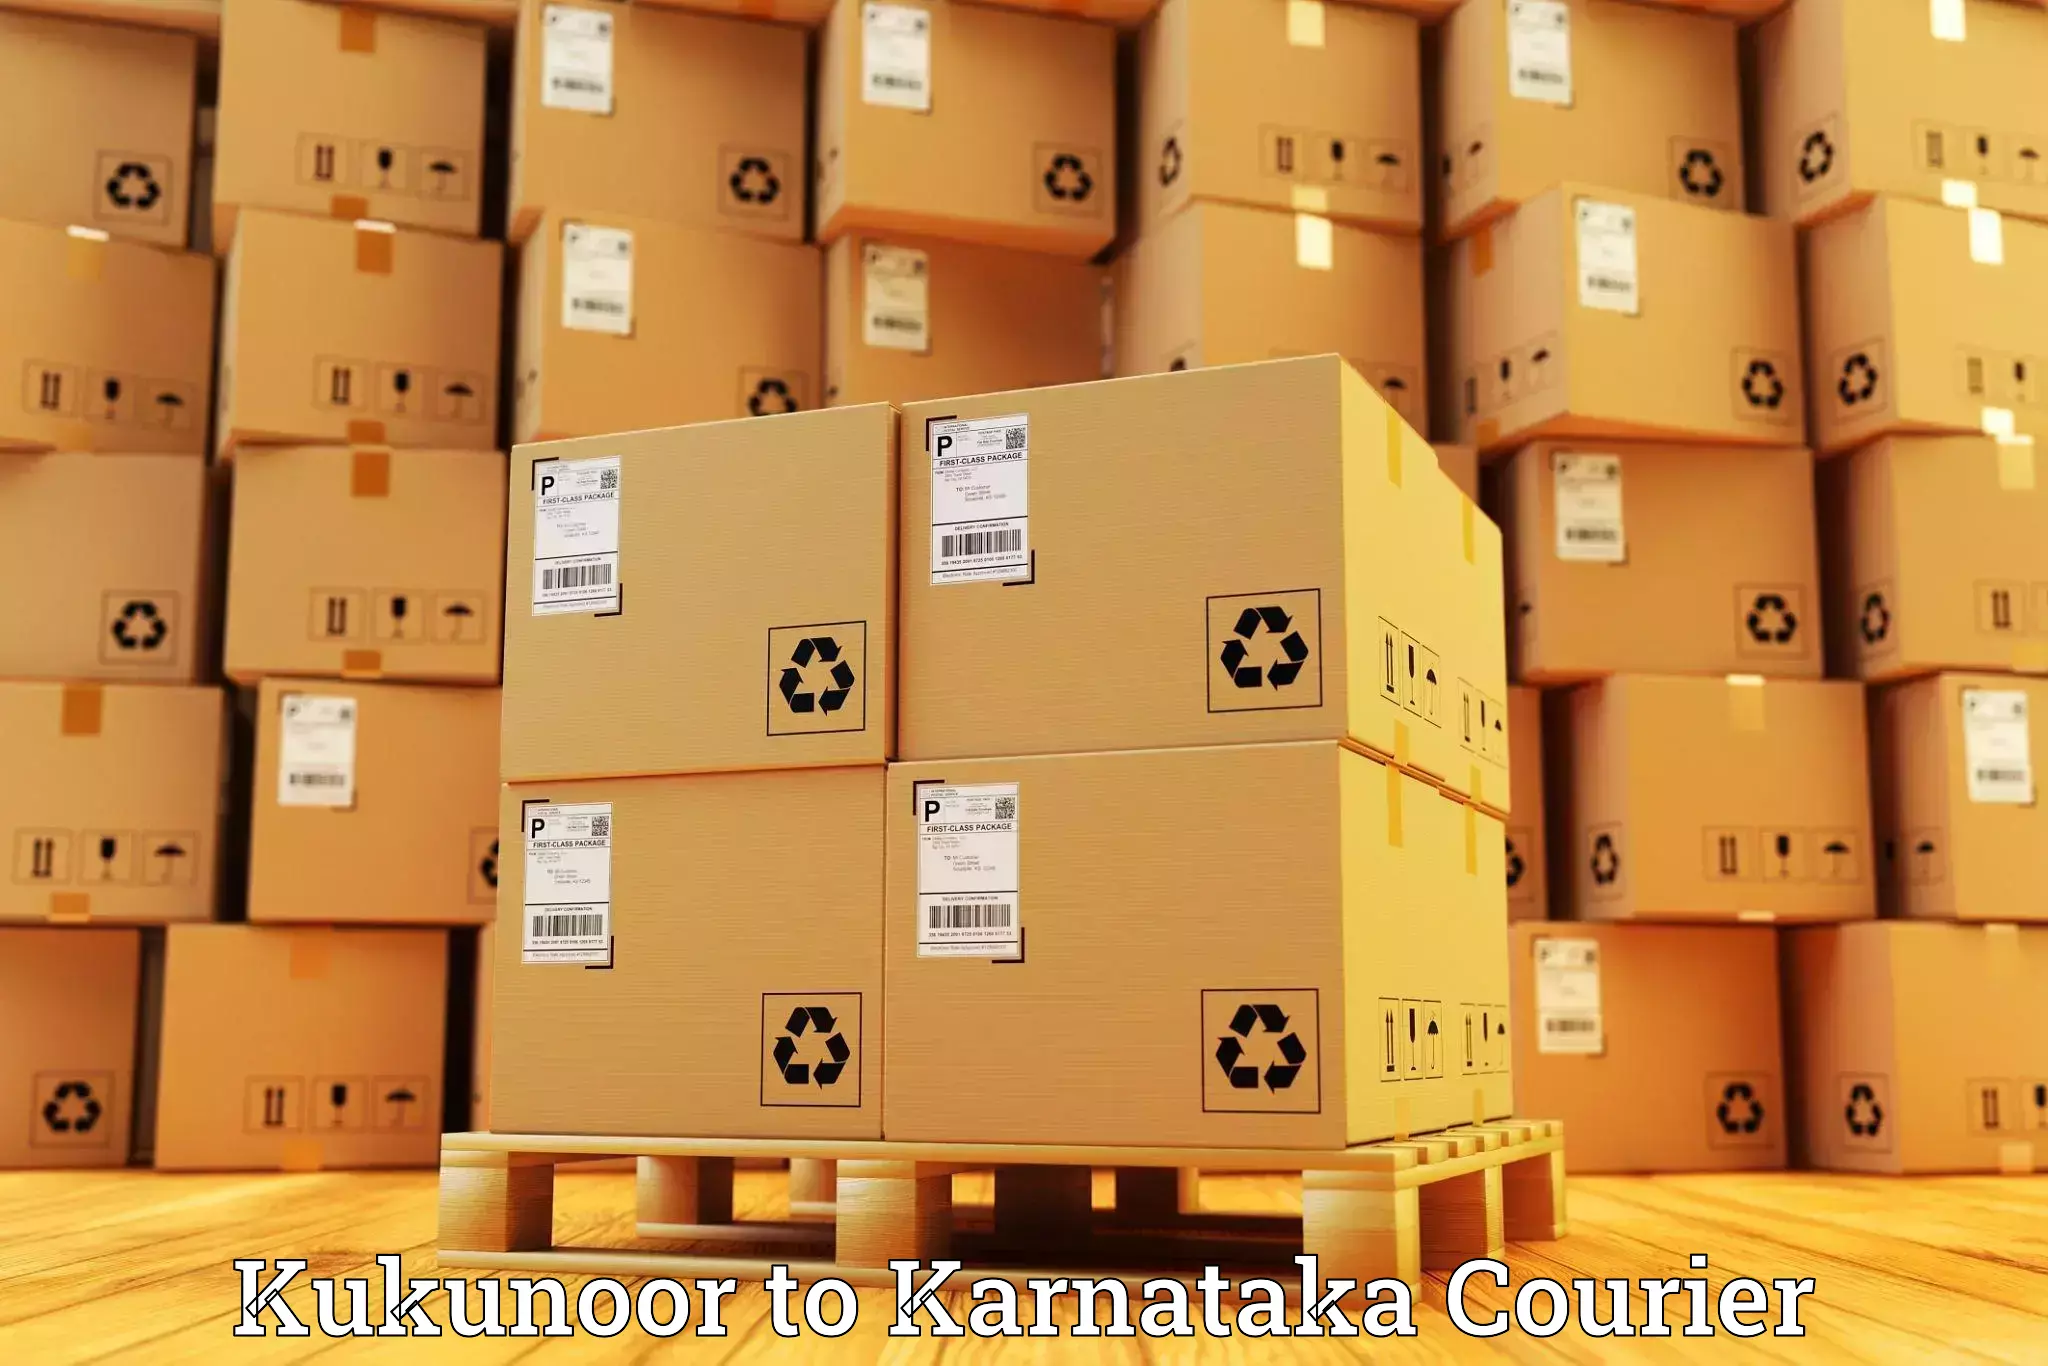 Lightweight parcel options Kukunoor to Bewoor